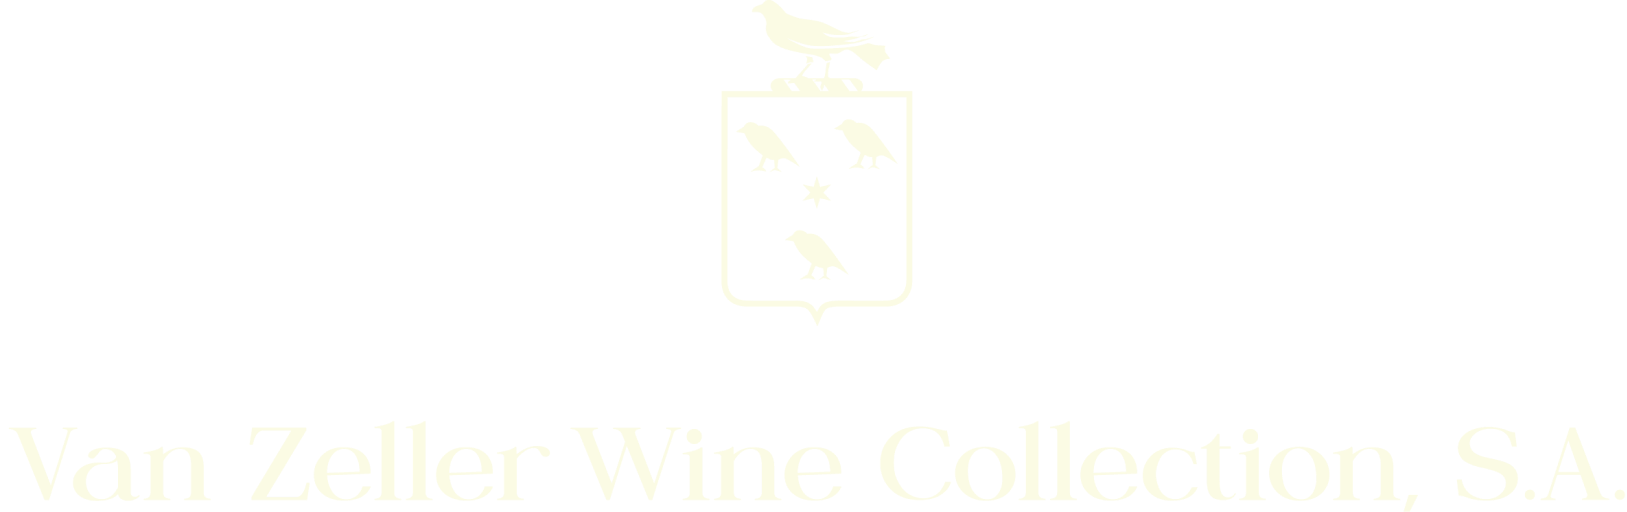 Van Zeller Wine Collection S.A.